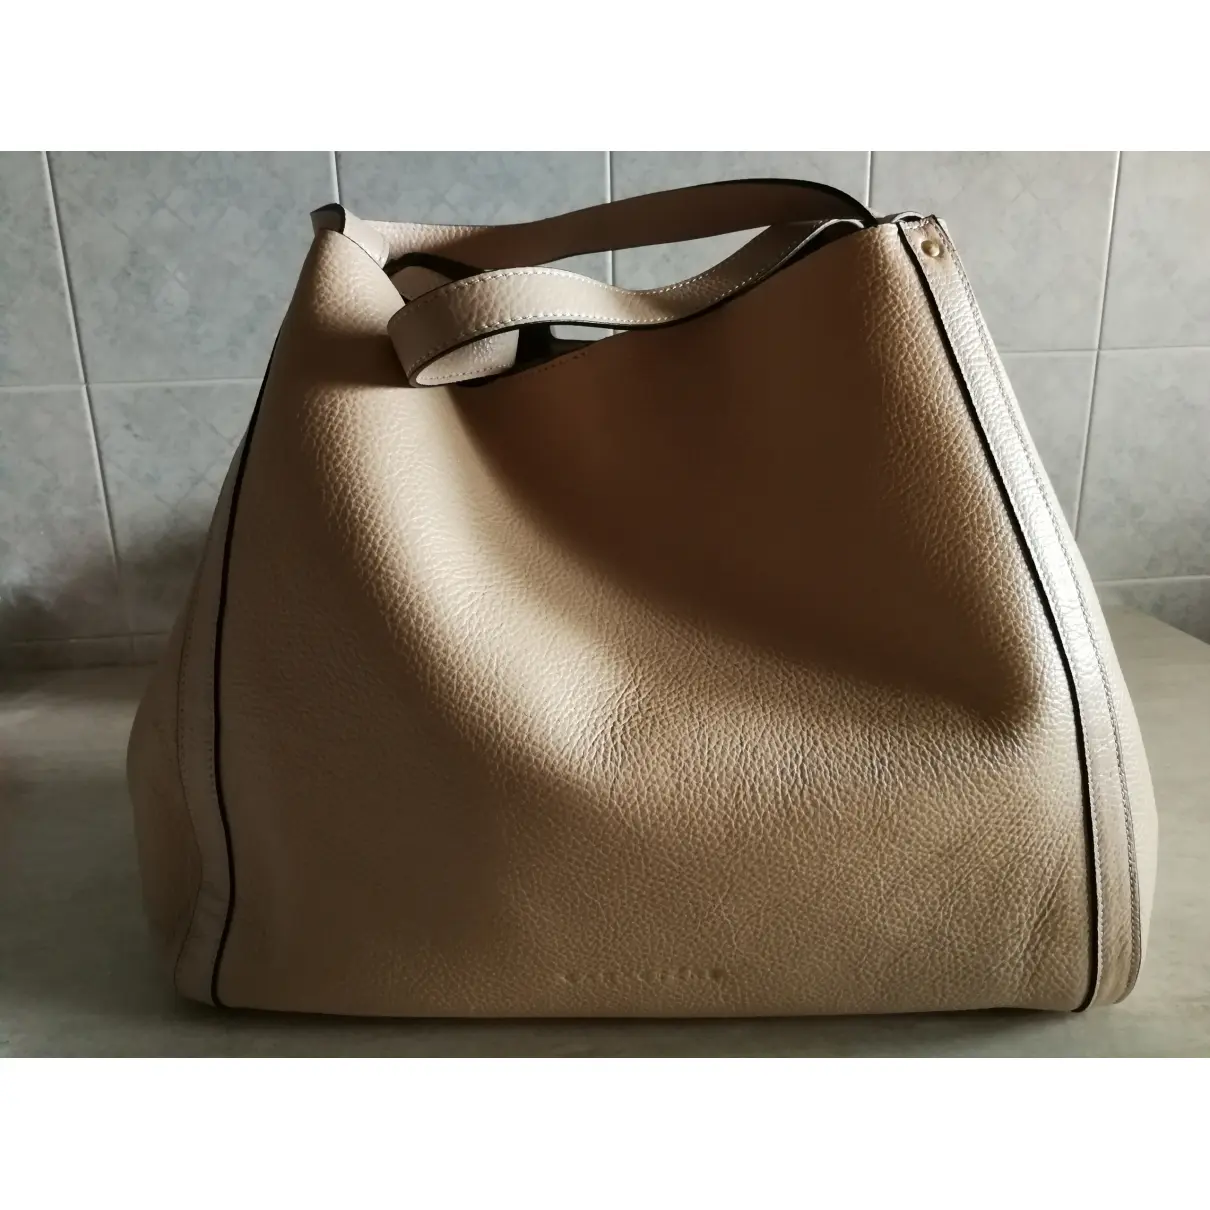 Buy CARACTERE Leather handbag online